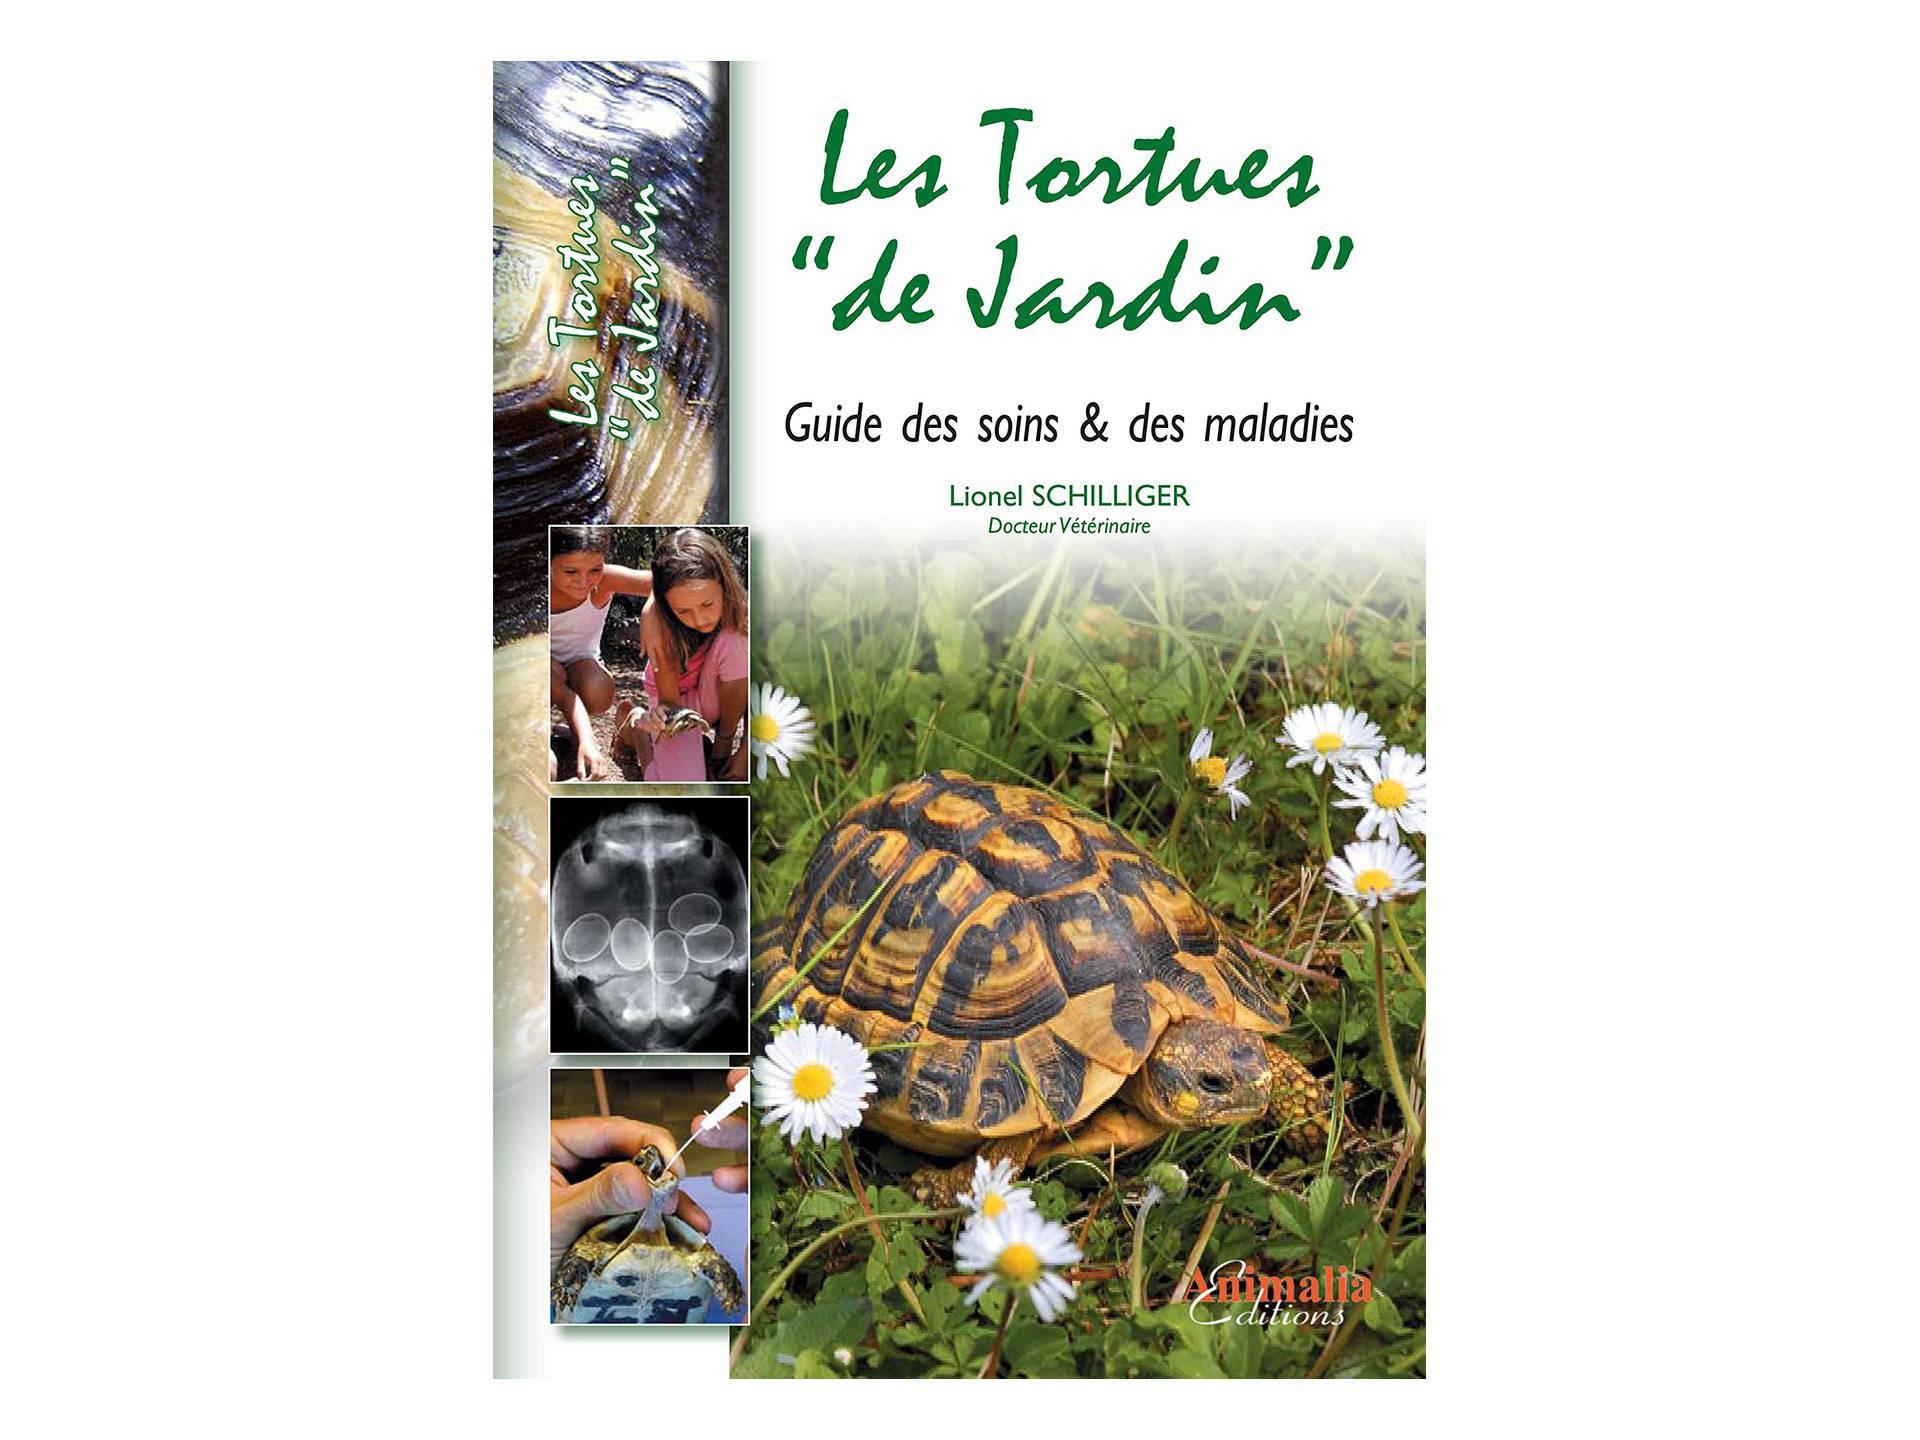 Livre Les tortues de jardin Soins et Maladies Lionel Schilliger neuvième